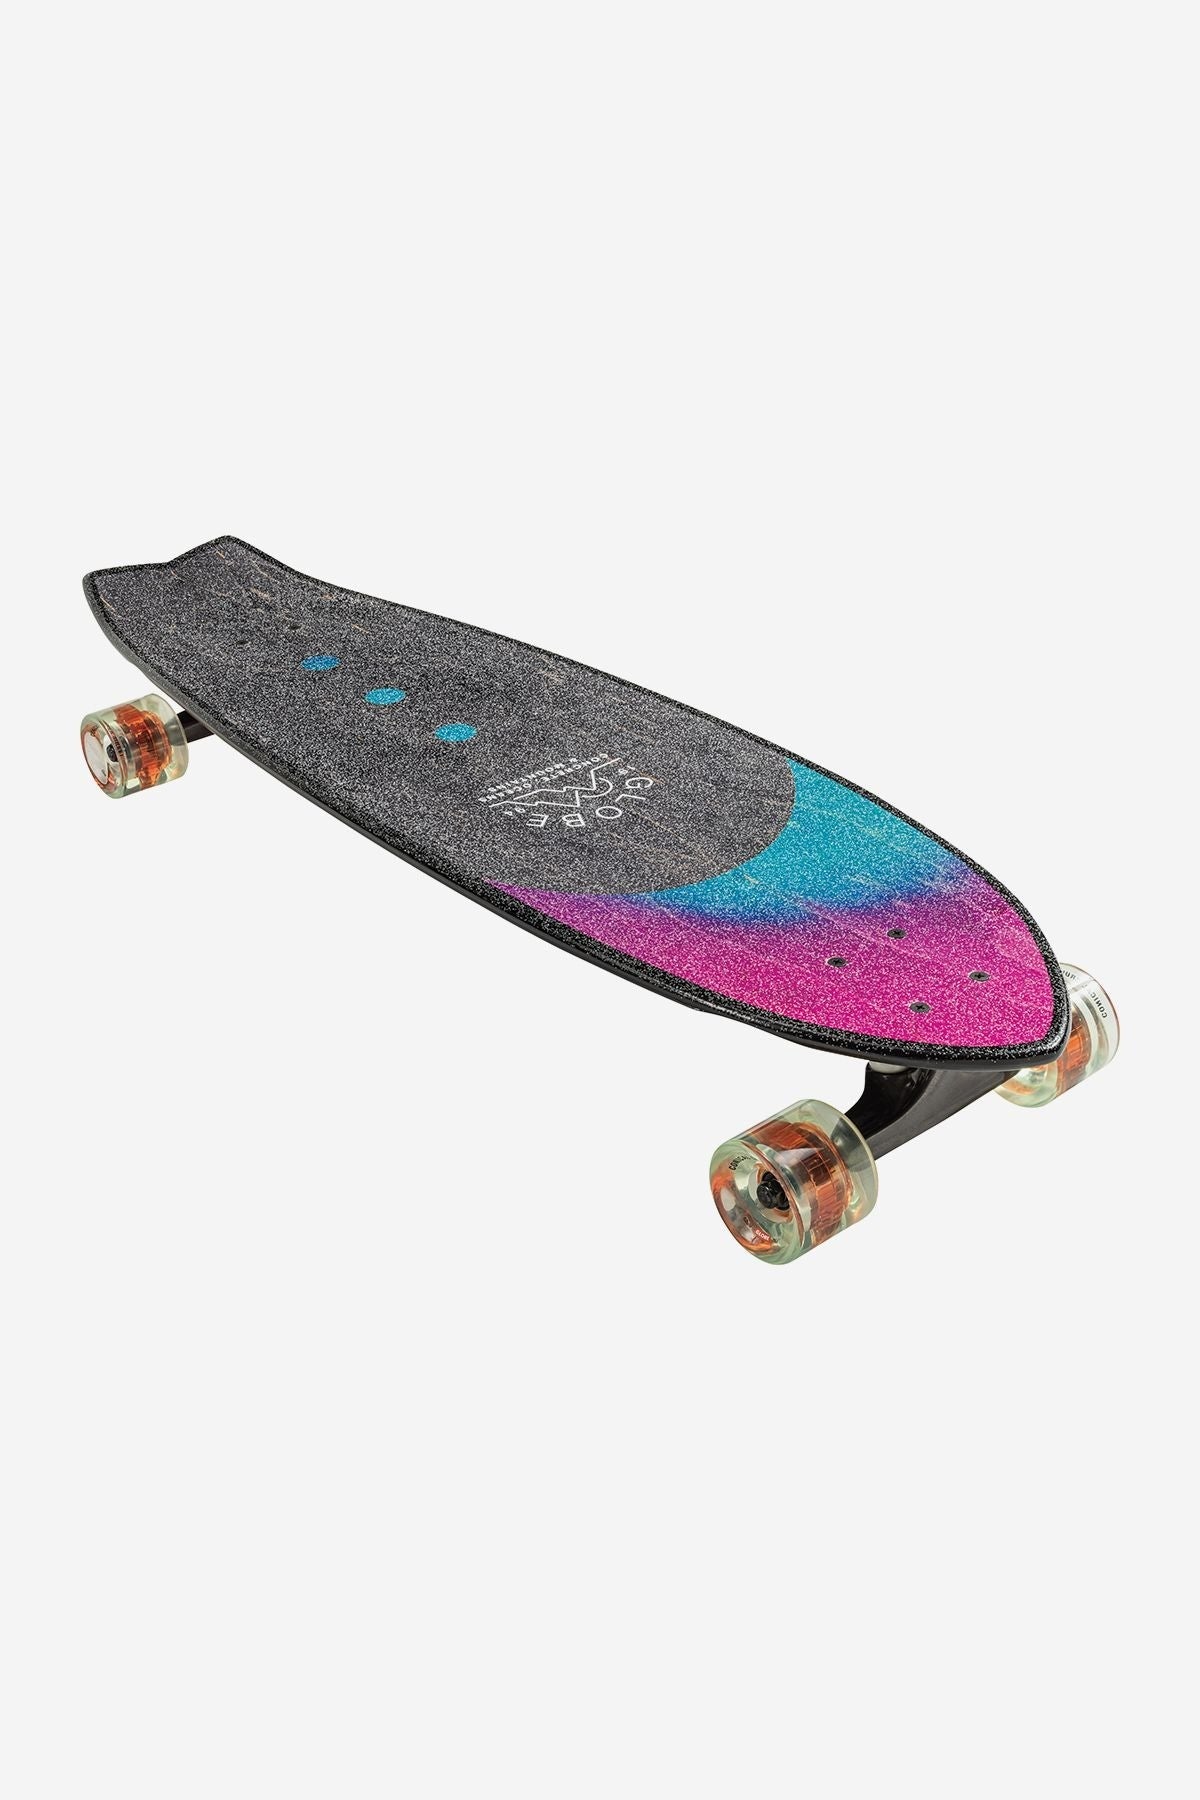 Chromantic 33" Cruiser Skateboard